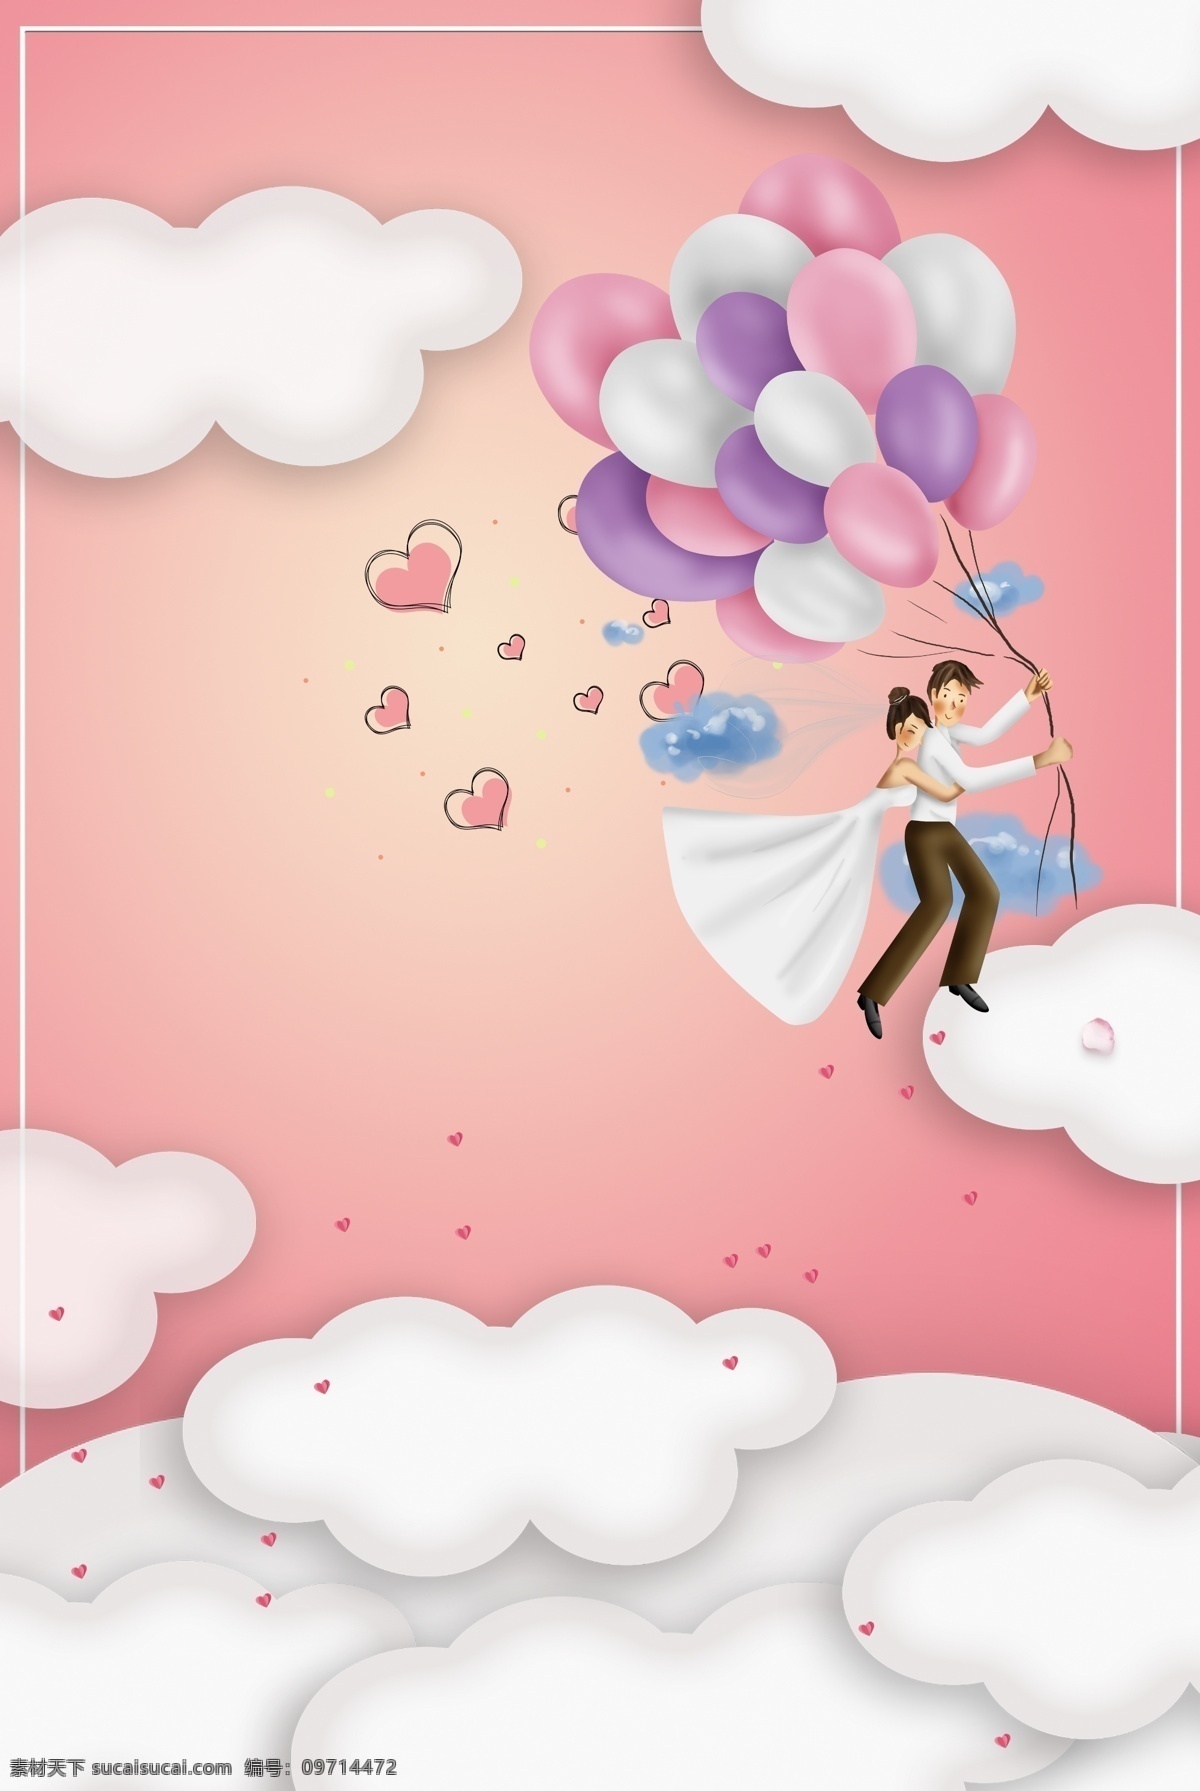 粉色 浪漫 云朵 520 情人节 海报 背景 文艺 清新 卡通 手绘 质感 纹理 爱心